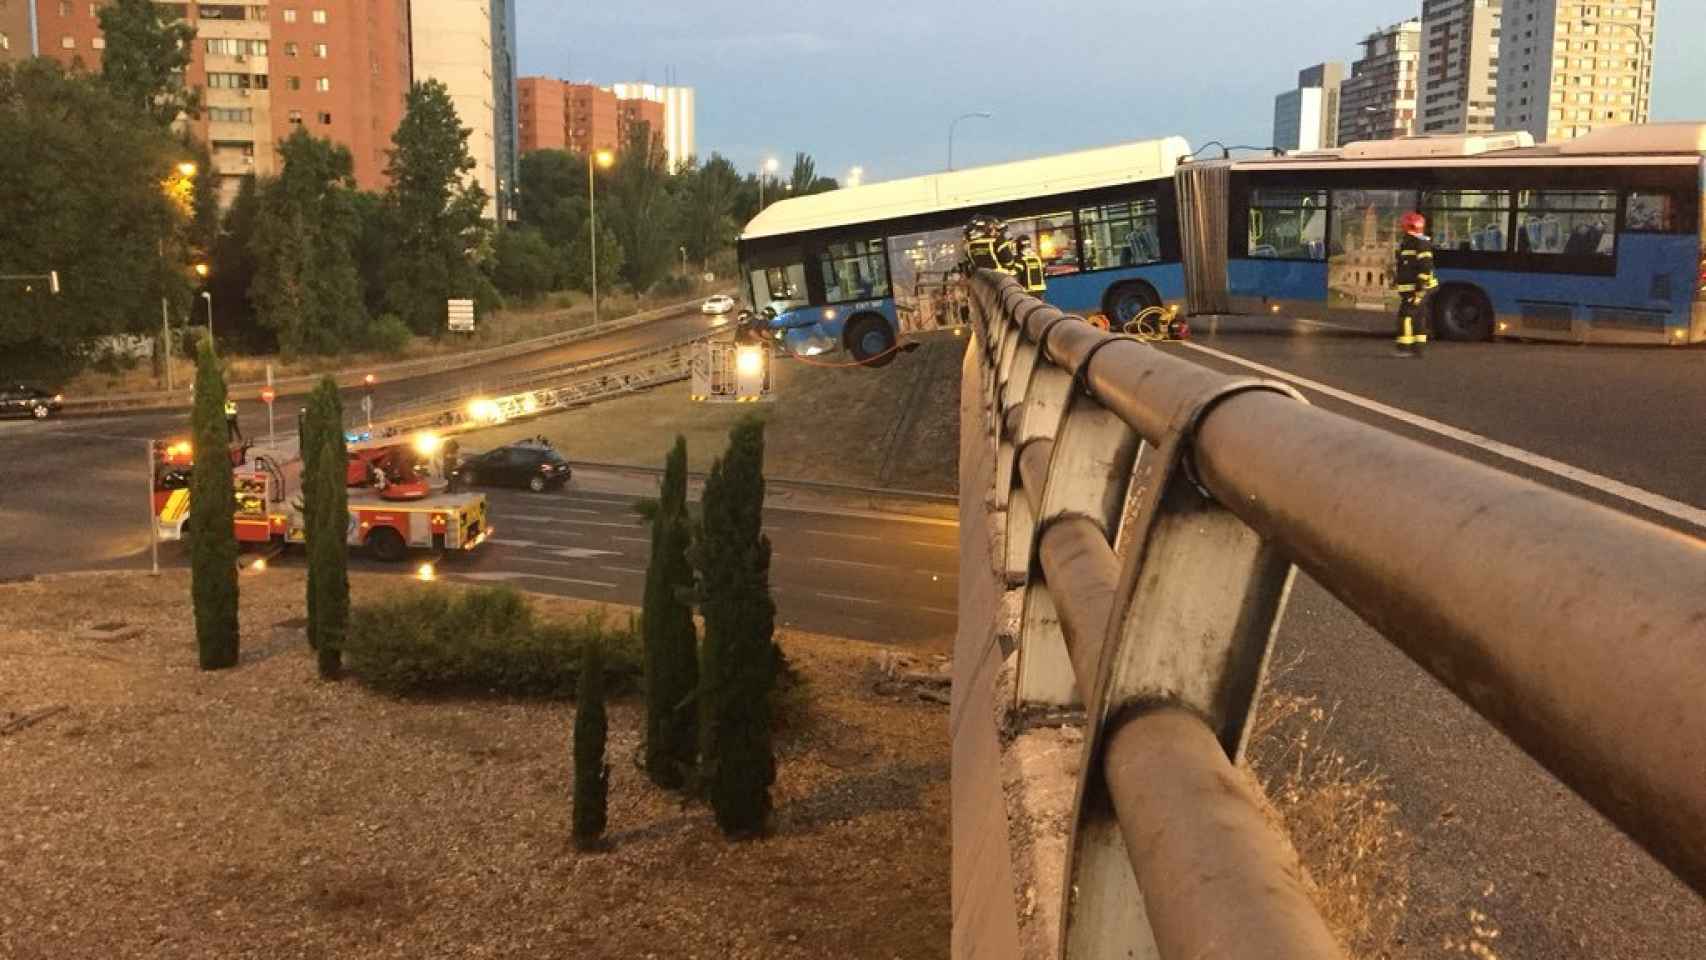 Otra imagen del autobús lanzadera accidentado